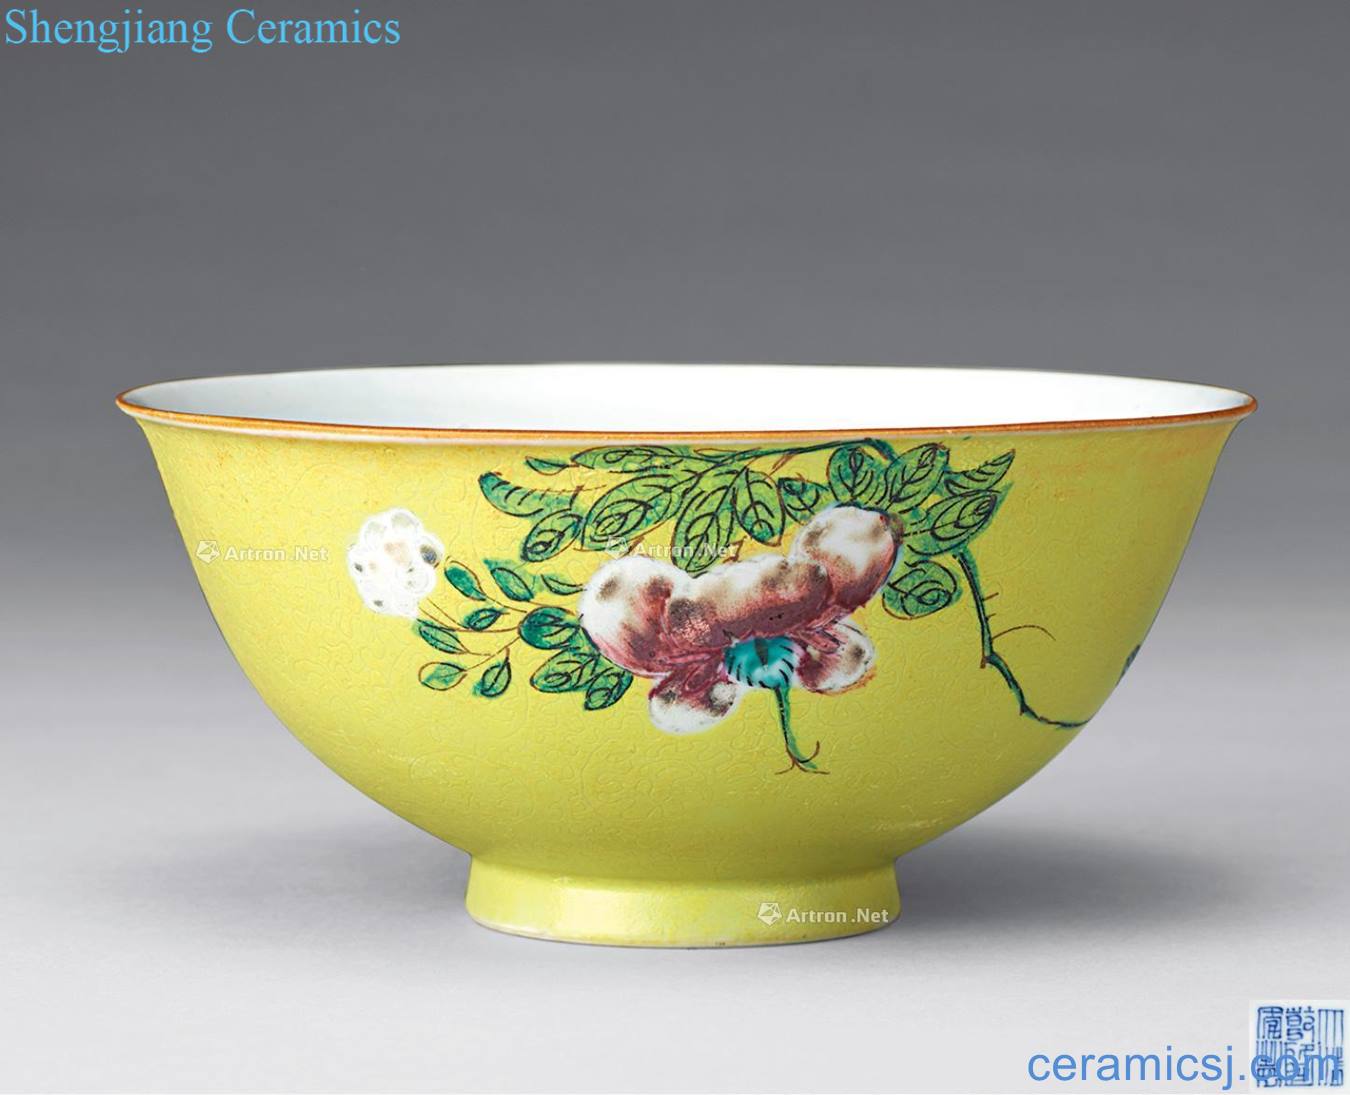 Qing huang pastel flowers dark moment ruyi green-splashed bowls